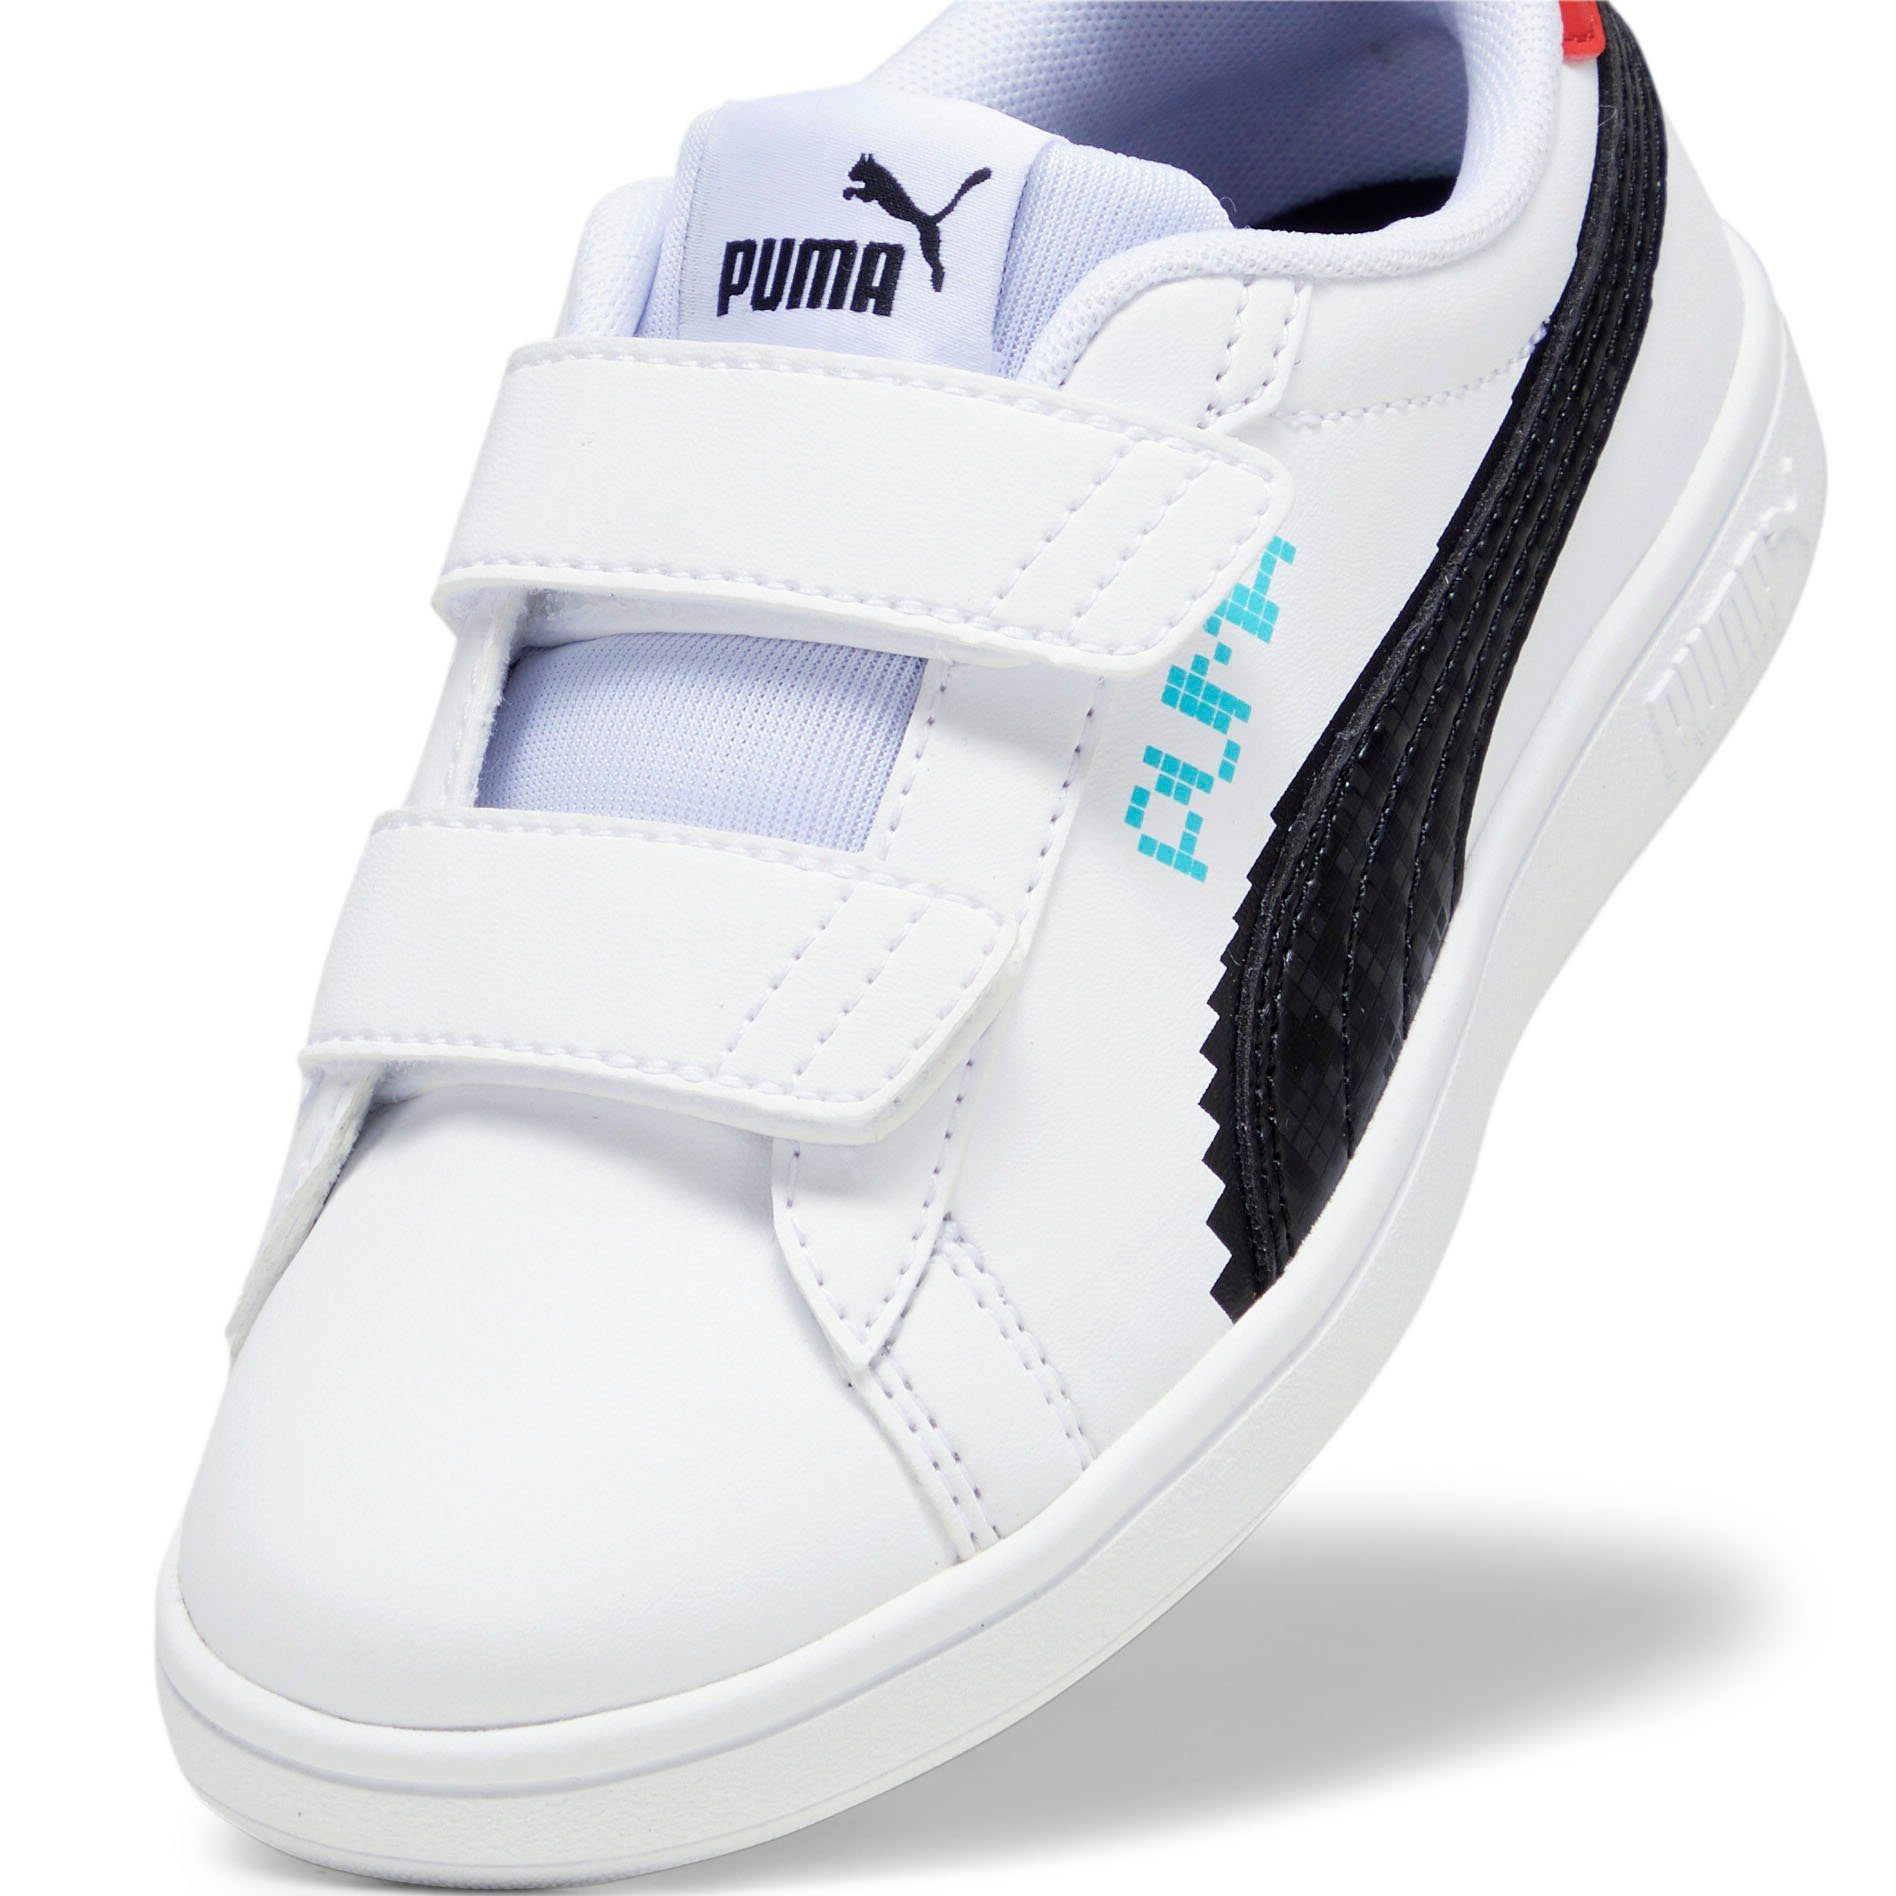 PUMA SMASH 3.0 L LET'S PUMA Black-Team V Aqua-For Red PLAY All White-PUMA PS Sneaker Time